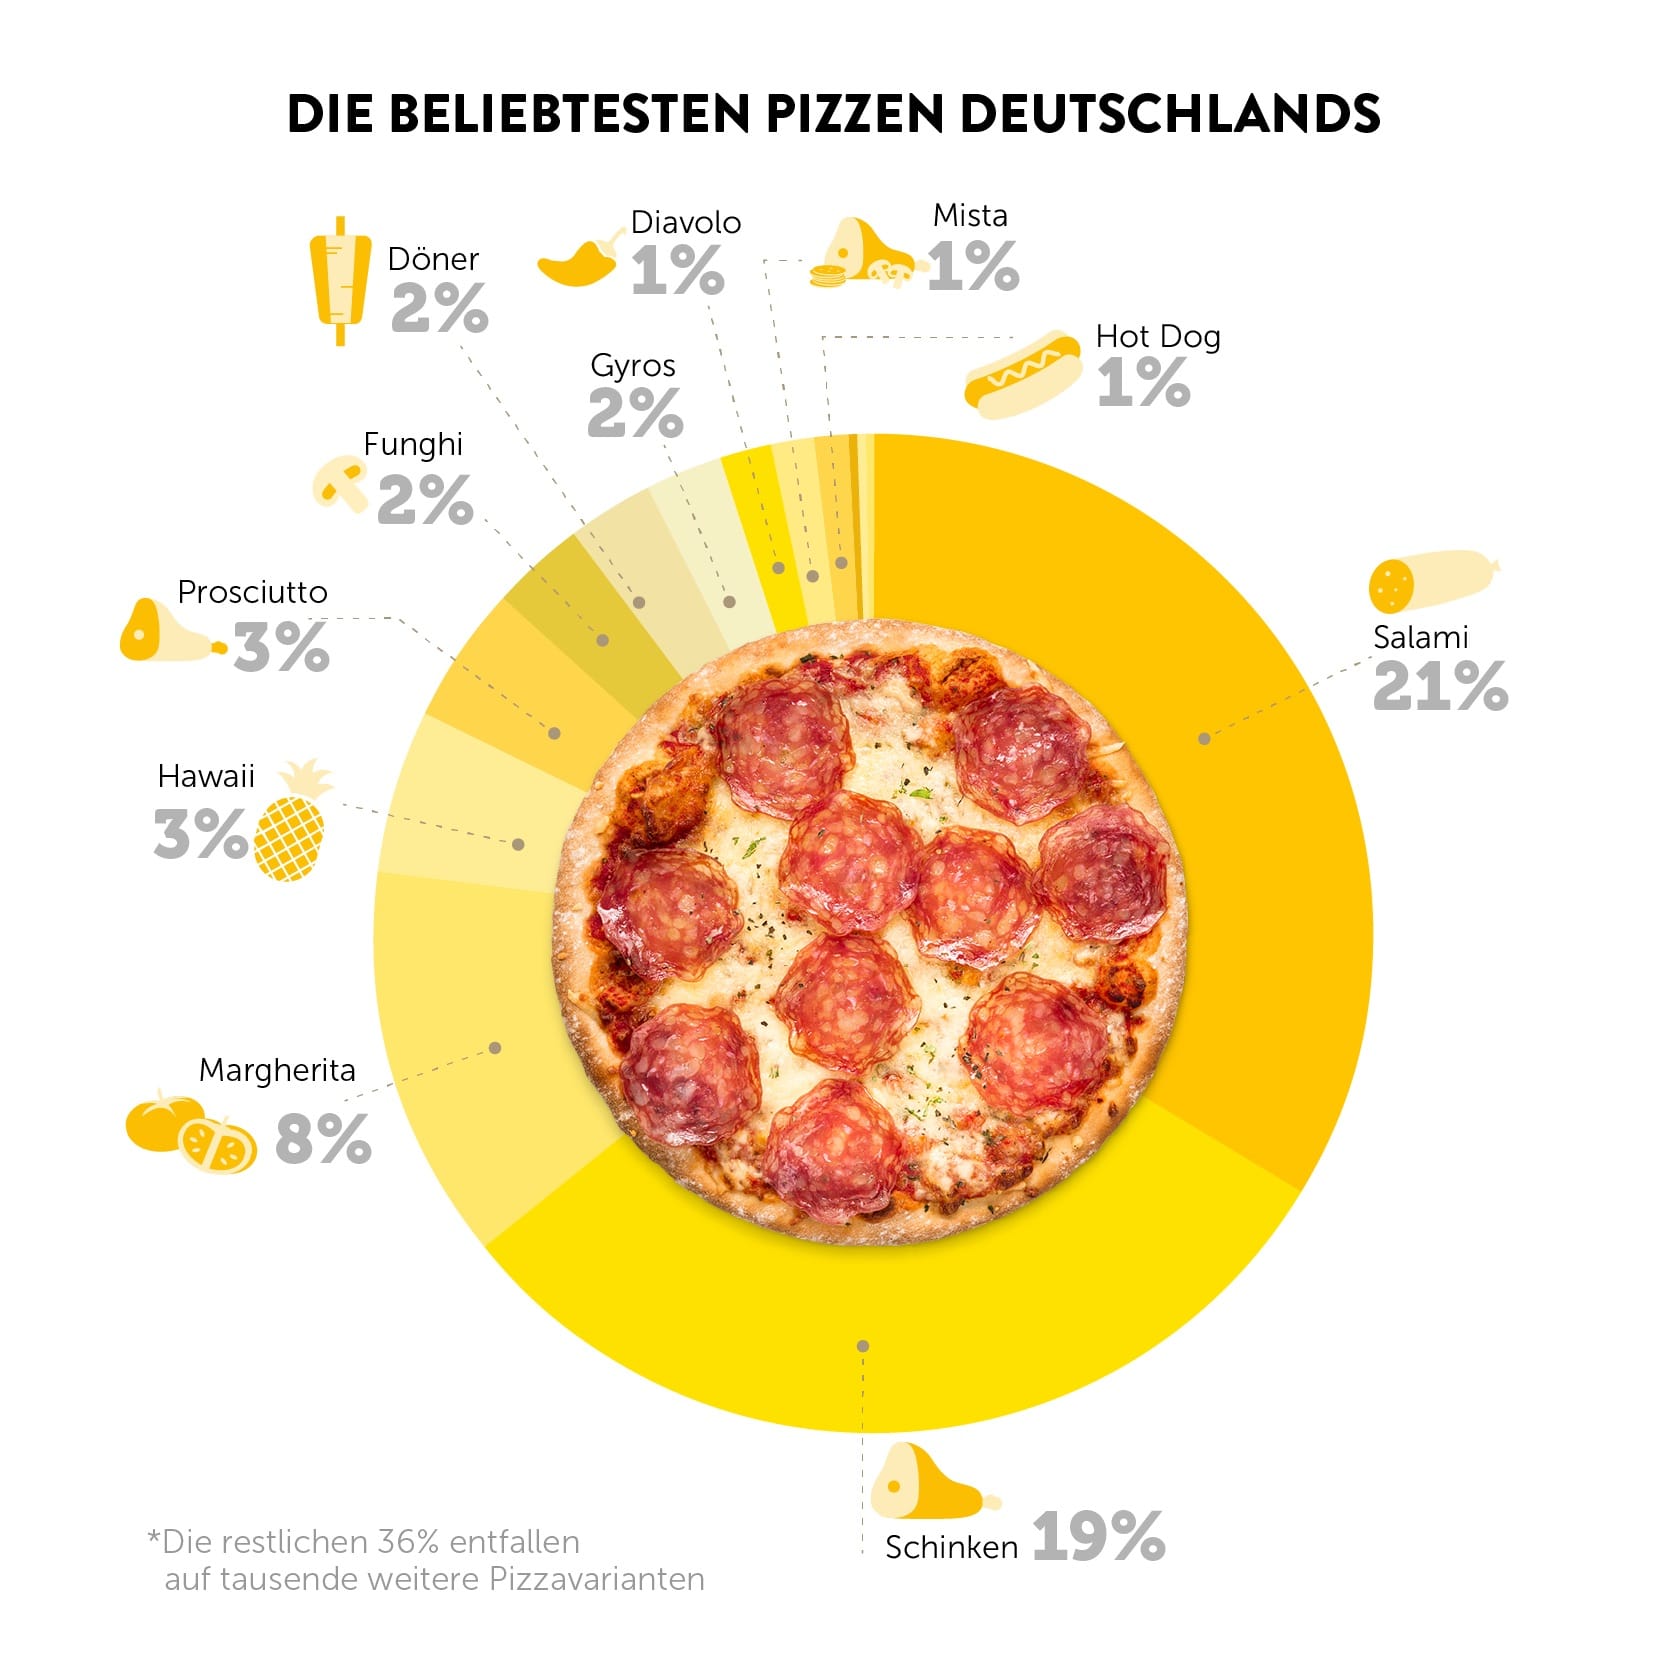 Pizzen in Deutschland: In allen Bundesländern bis auf Sachsen ist Pizza Salami auf Platz 1.